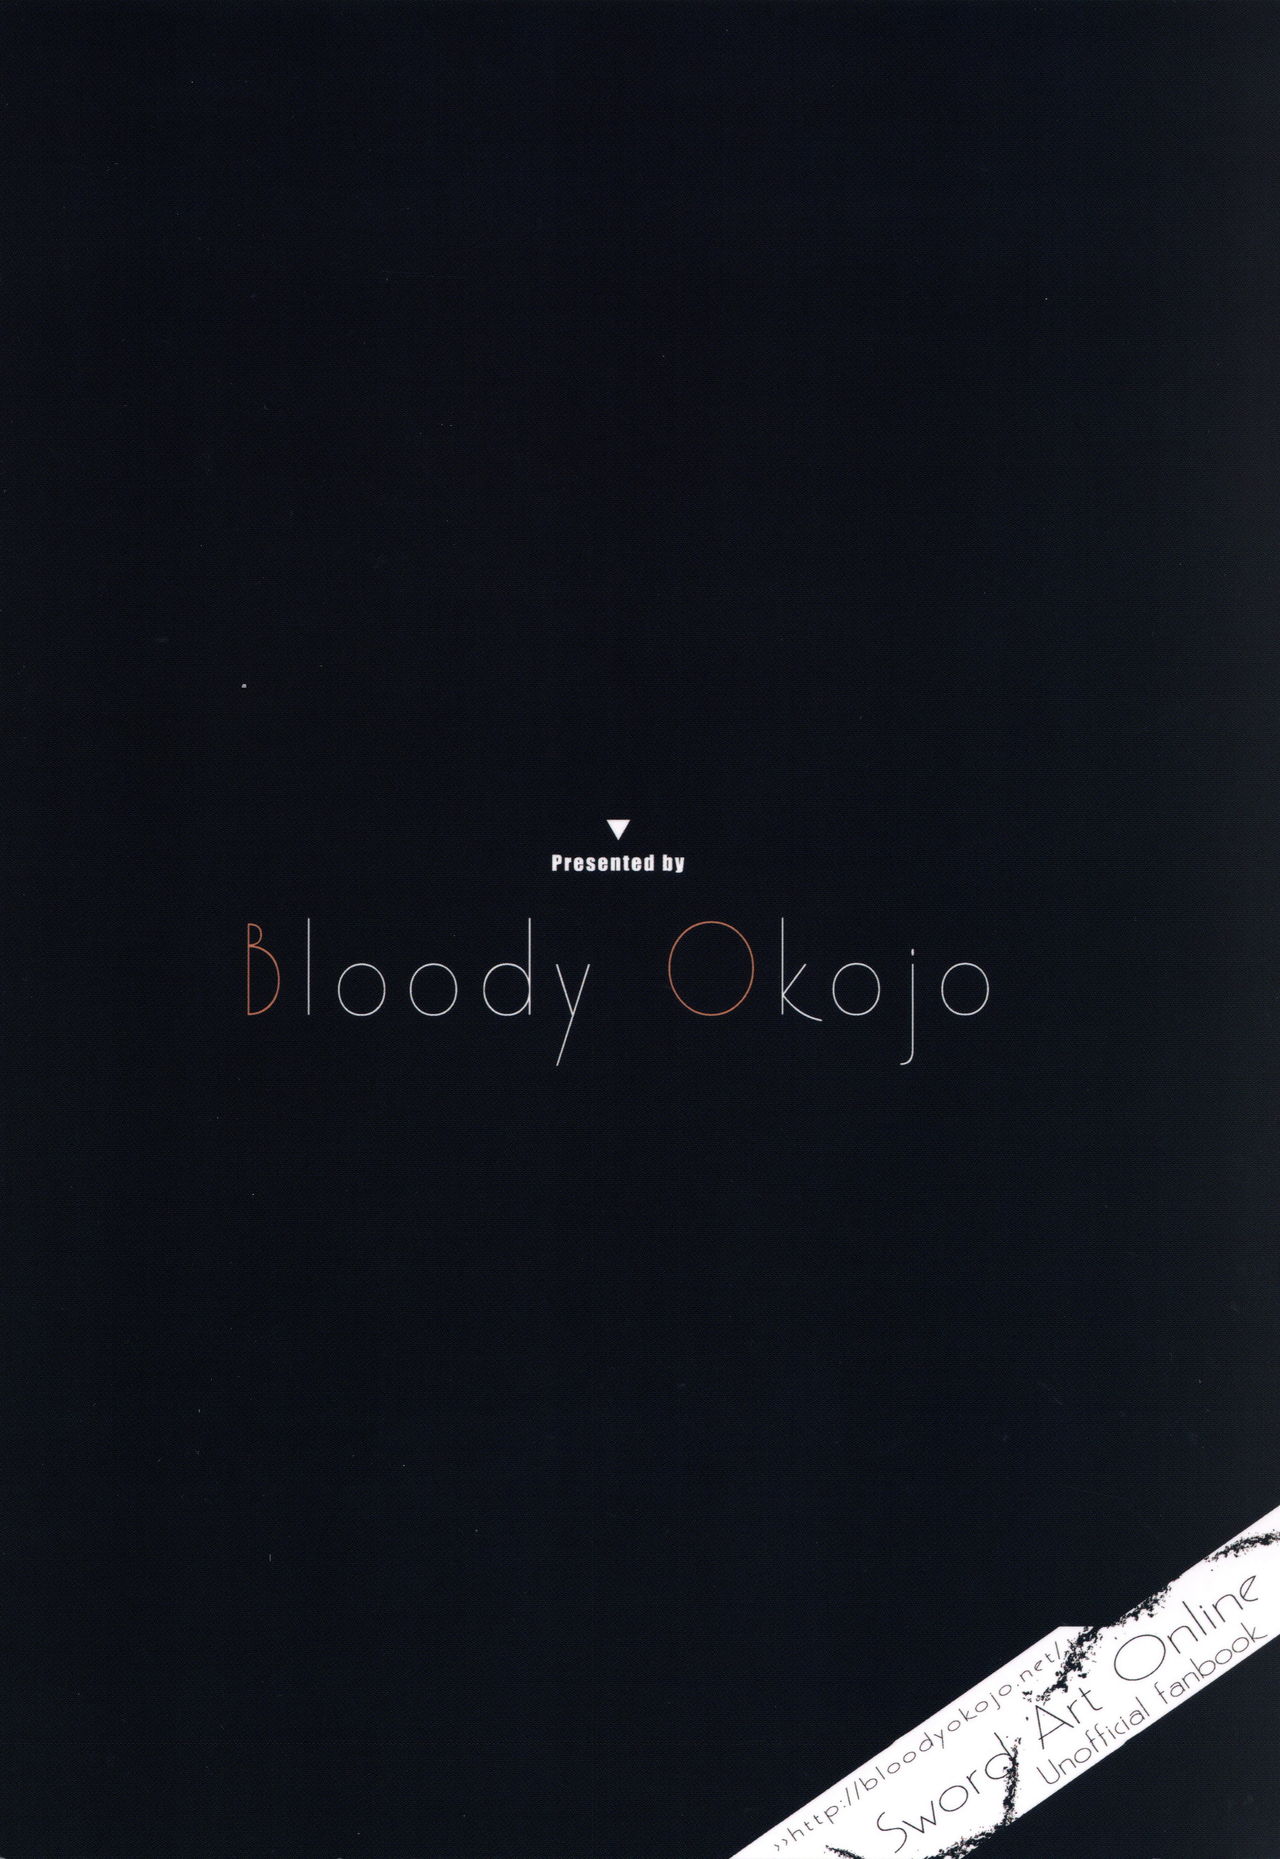 (C92) [Bloody Okojo (きゃびあ、モジャコ)] Voyeuristic Disorder (ソードアート・オンライン) [英訳]